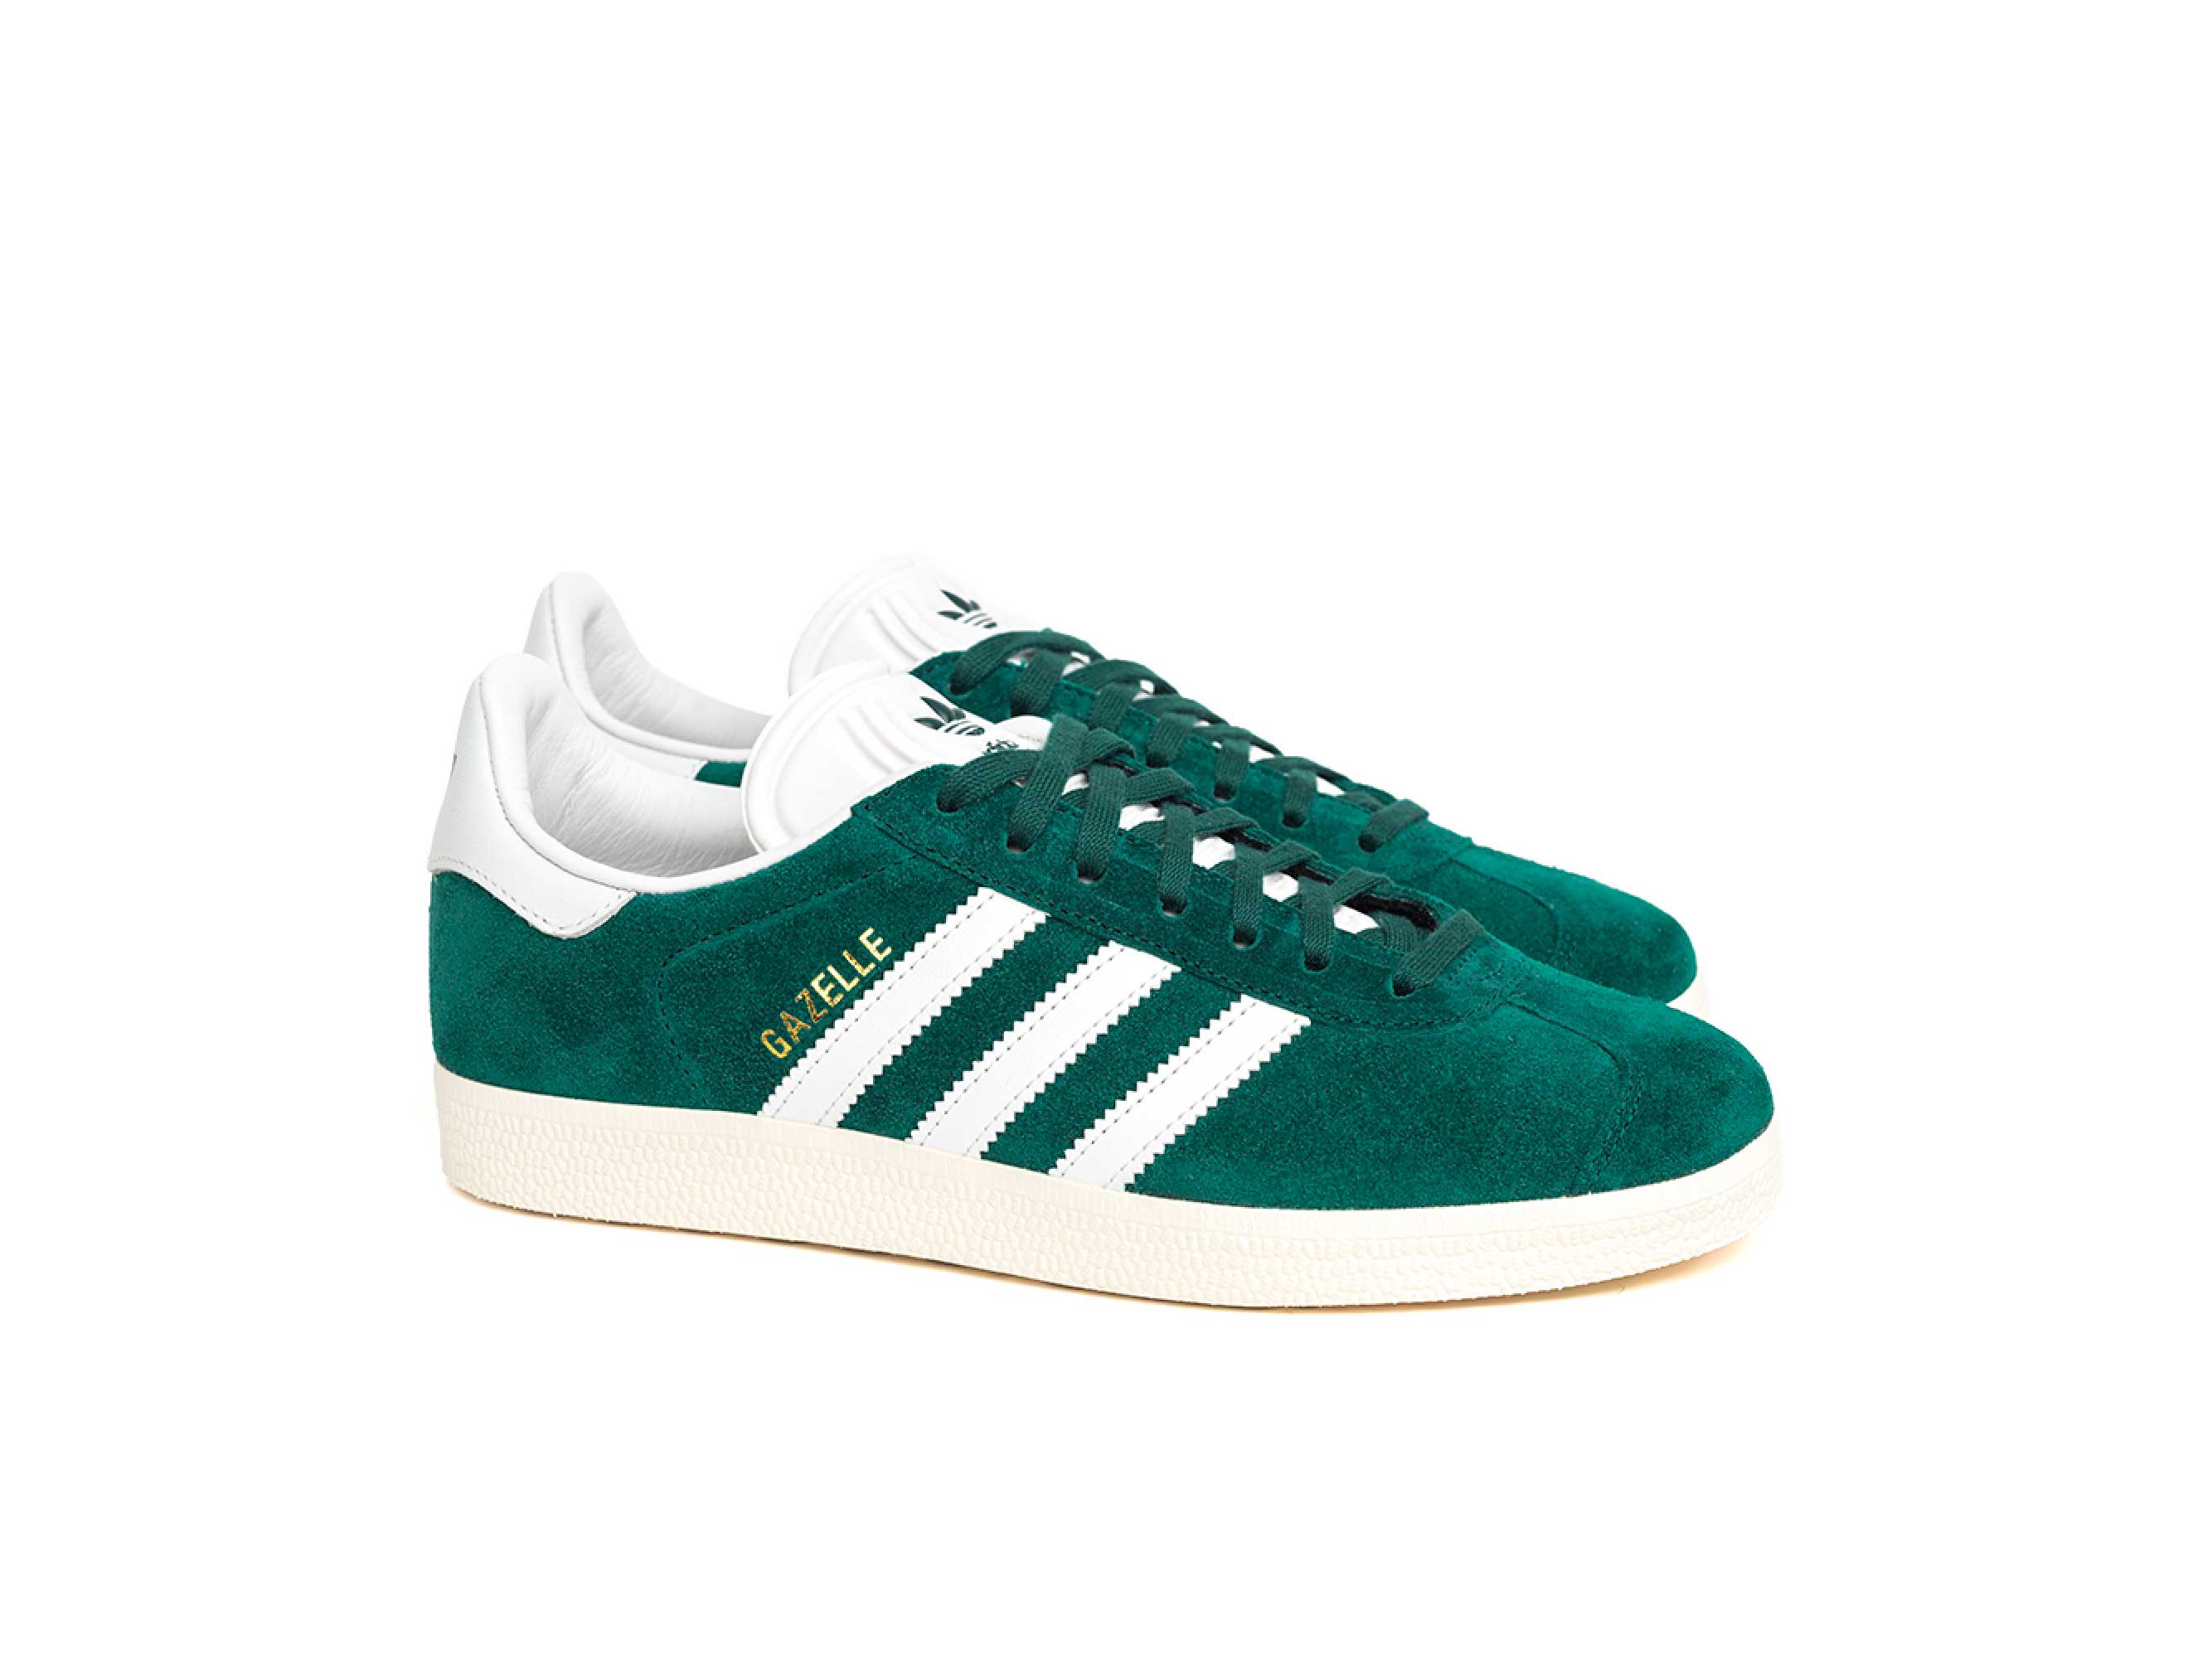 Кеды адидас зеленые. Adidas Gazelle зеленые. Кроссовки adidas Gazelle Green. Adidas Gazelle женские зеленые. Adidas Gazelle White Green.